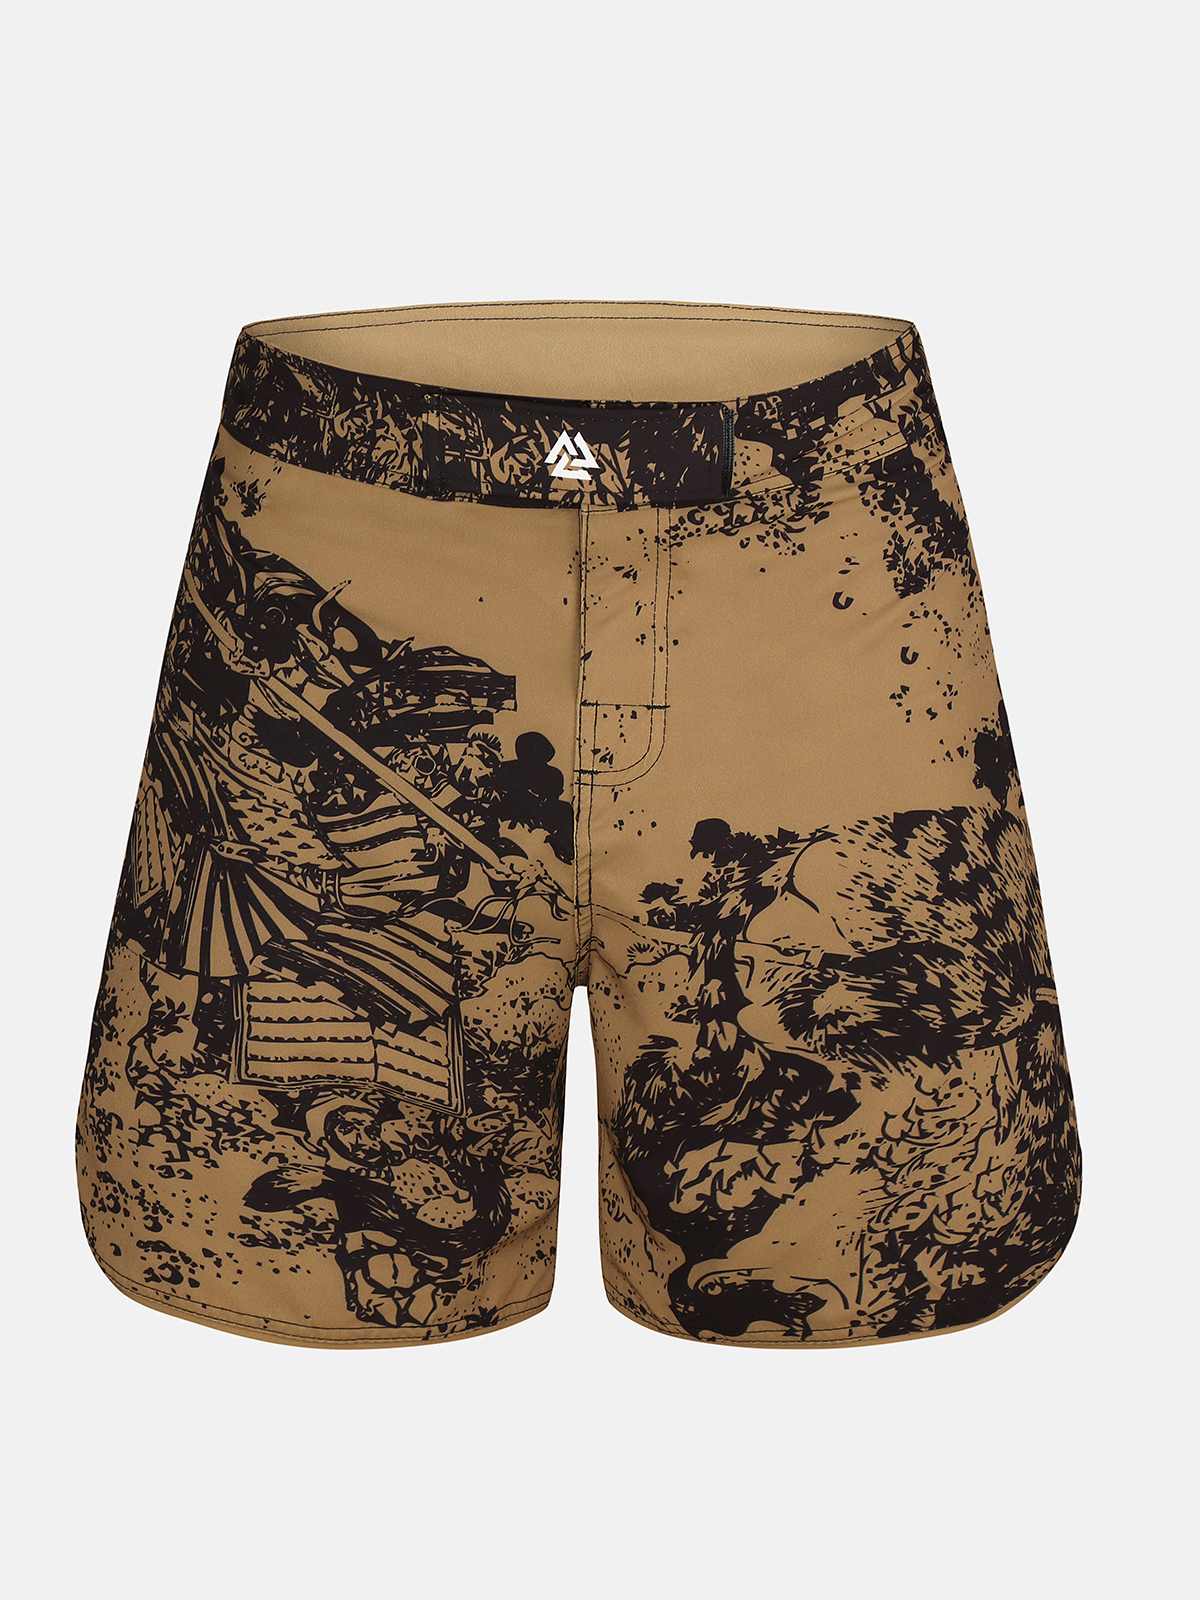 Peresvit Hokusai Sand ММА Fight Shorts